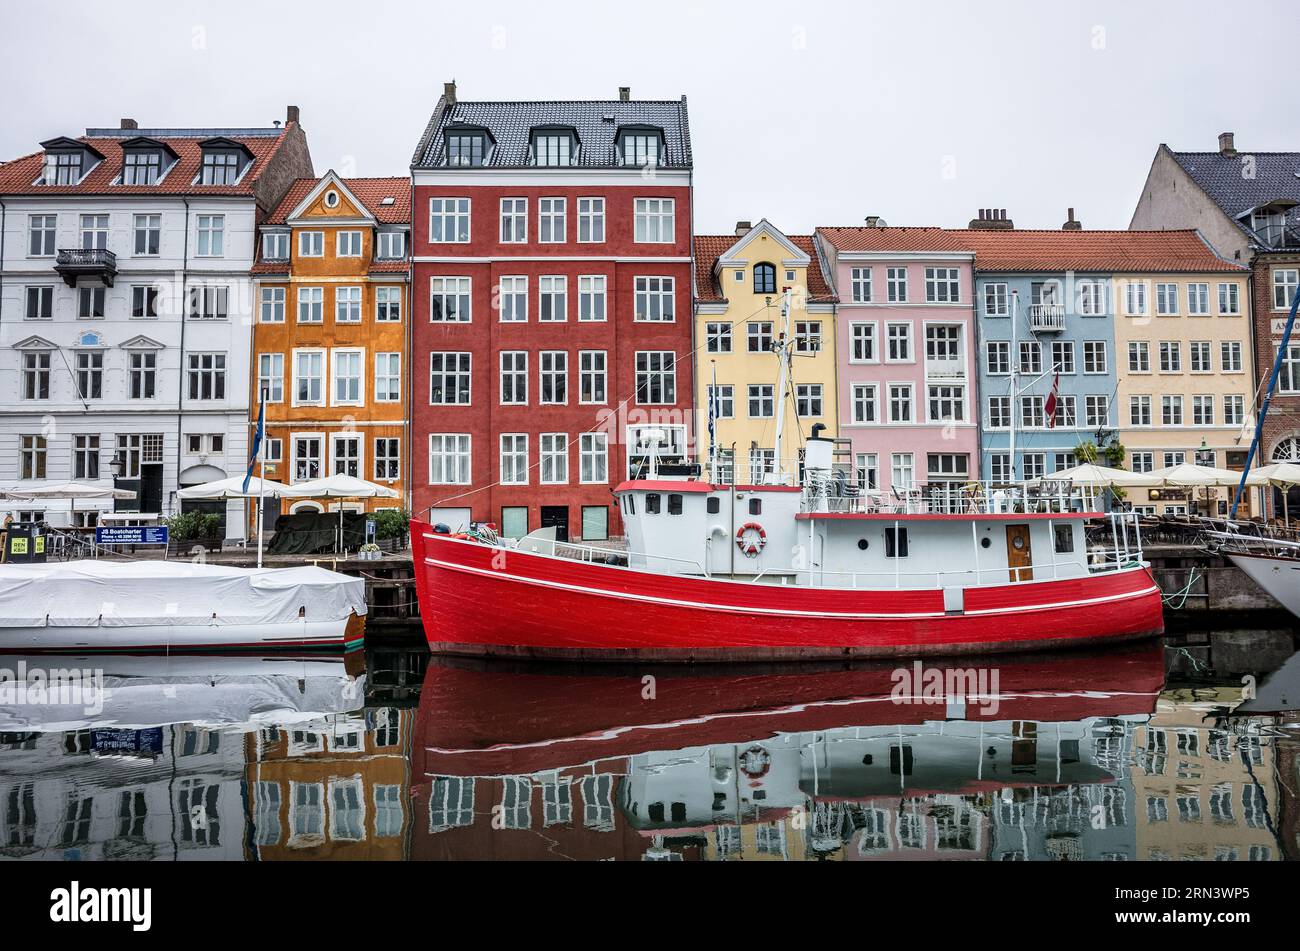 COPENAGHEN, Danimarca - Nyhavn, lo storico porto di Copenaghen, è visto animato da attività. Un tempo porto commerciale dove attraccavano navi da tutto il mondo, Nyhavn è ora un luogo di ritrovo culturale pieno di ristoranti, bar e case tradizionali, segnando la sua trasformazione da vivace centro marittimo a principale attrazione turistica. Foto Stock